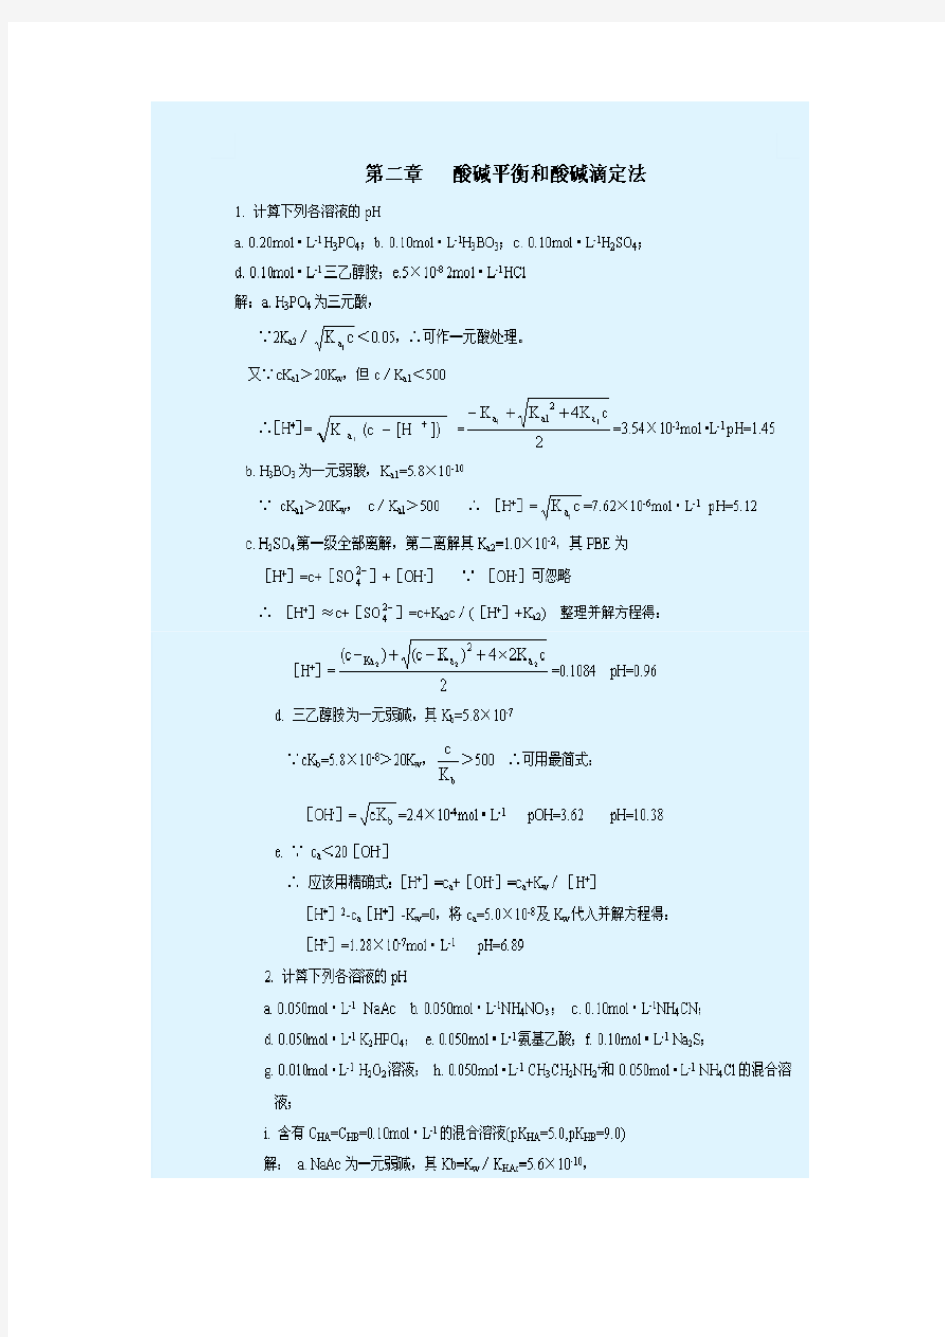 武汉大学-分析化学-第五版-课后习题答案